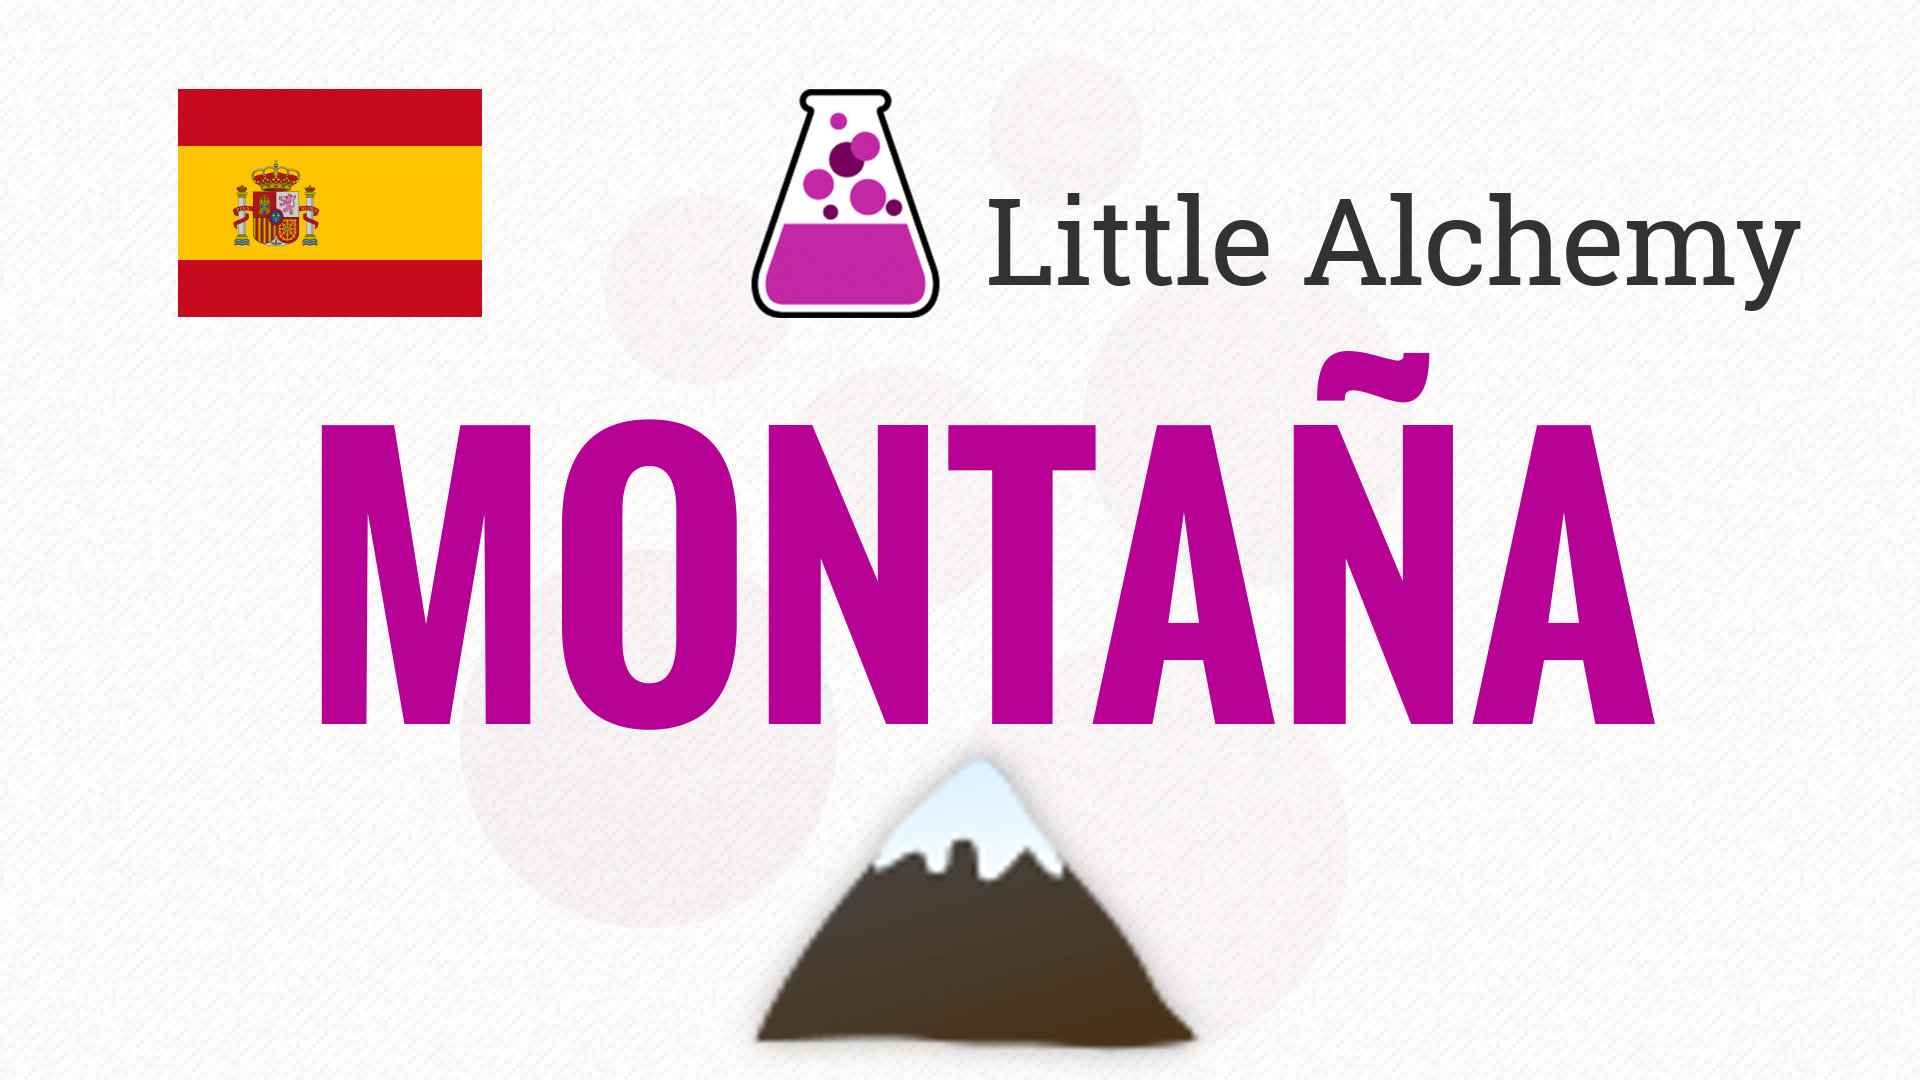 montaña - Little Alchemy Combinaciones